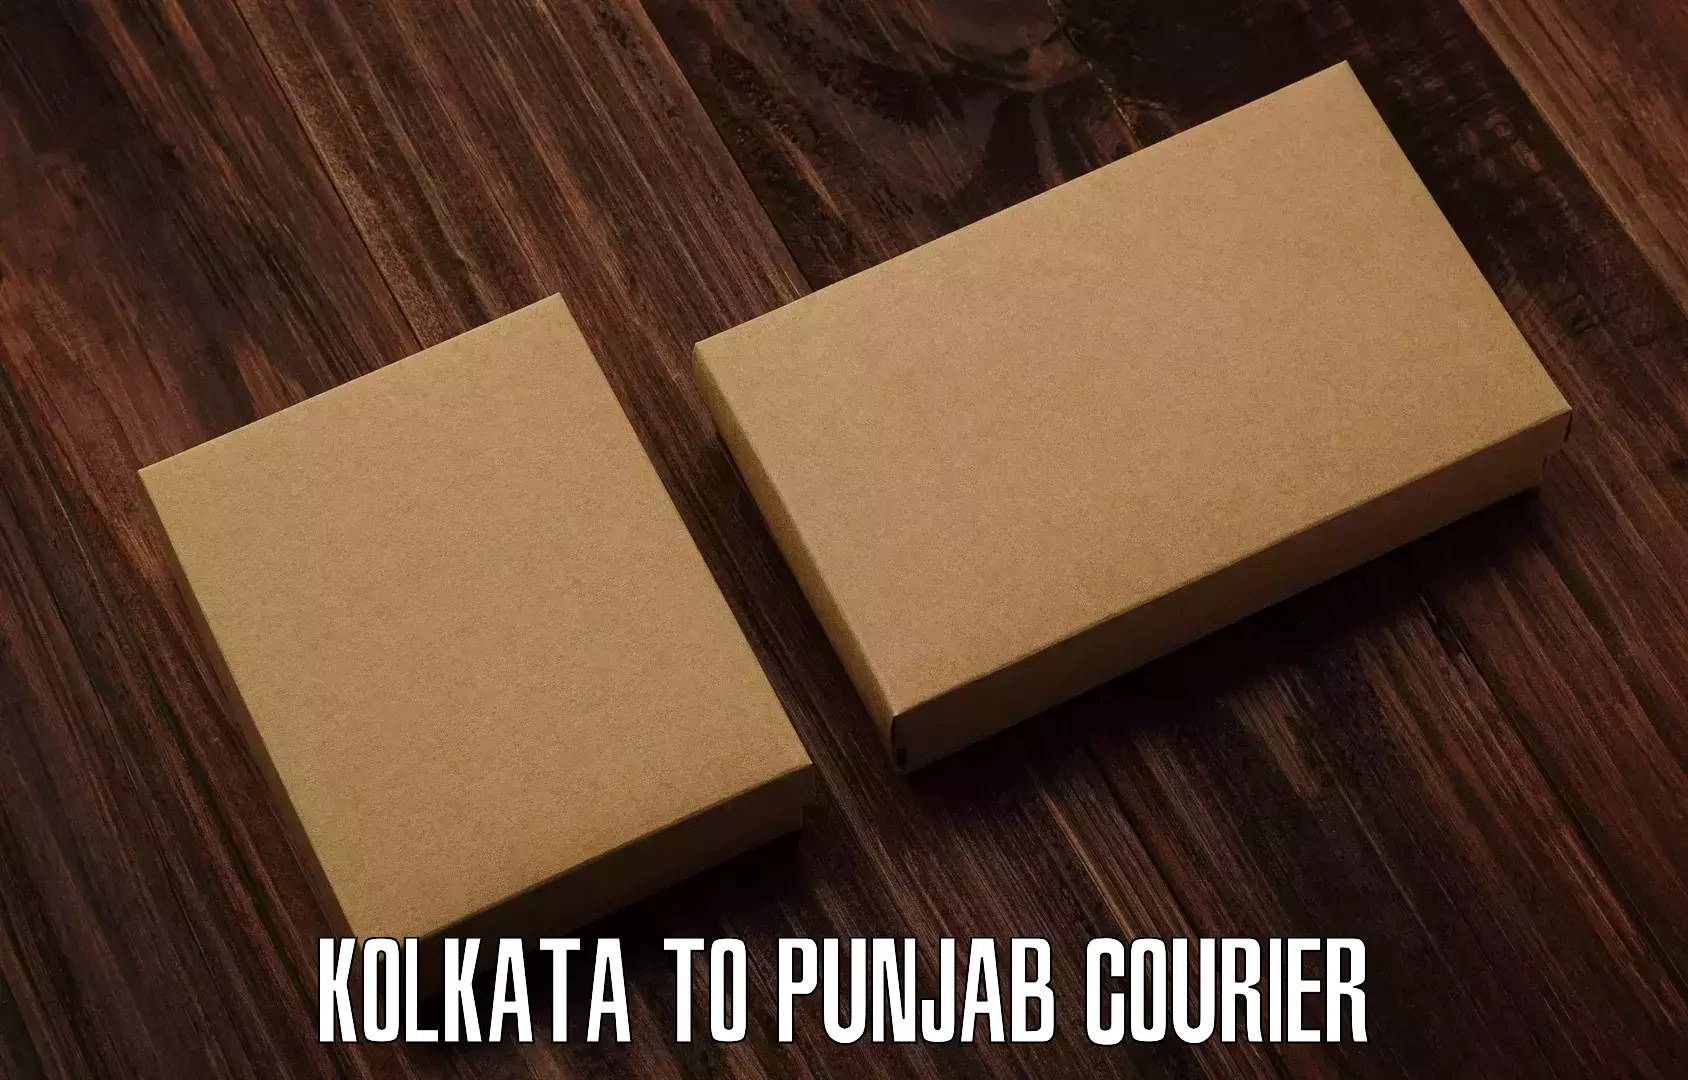 Punctual parcel services Kolkata to Mandi Gobindgarh